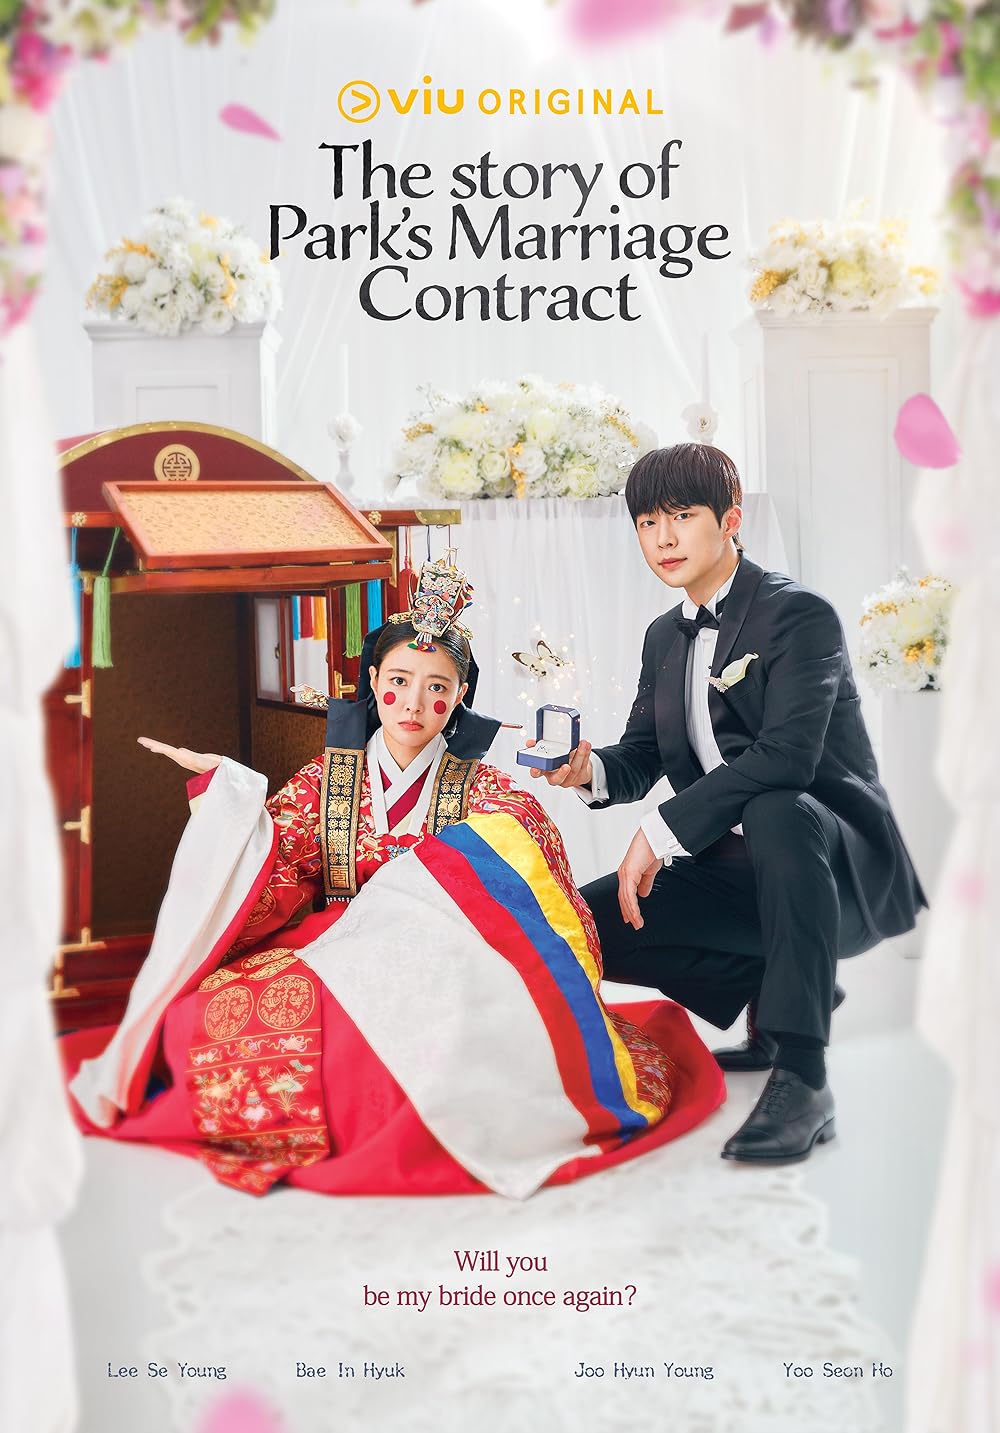 سریال معرفی کره ای داستان ازدواج قراردادی خانم پارک